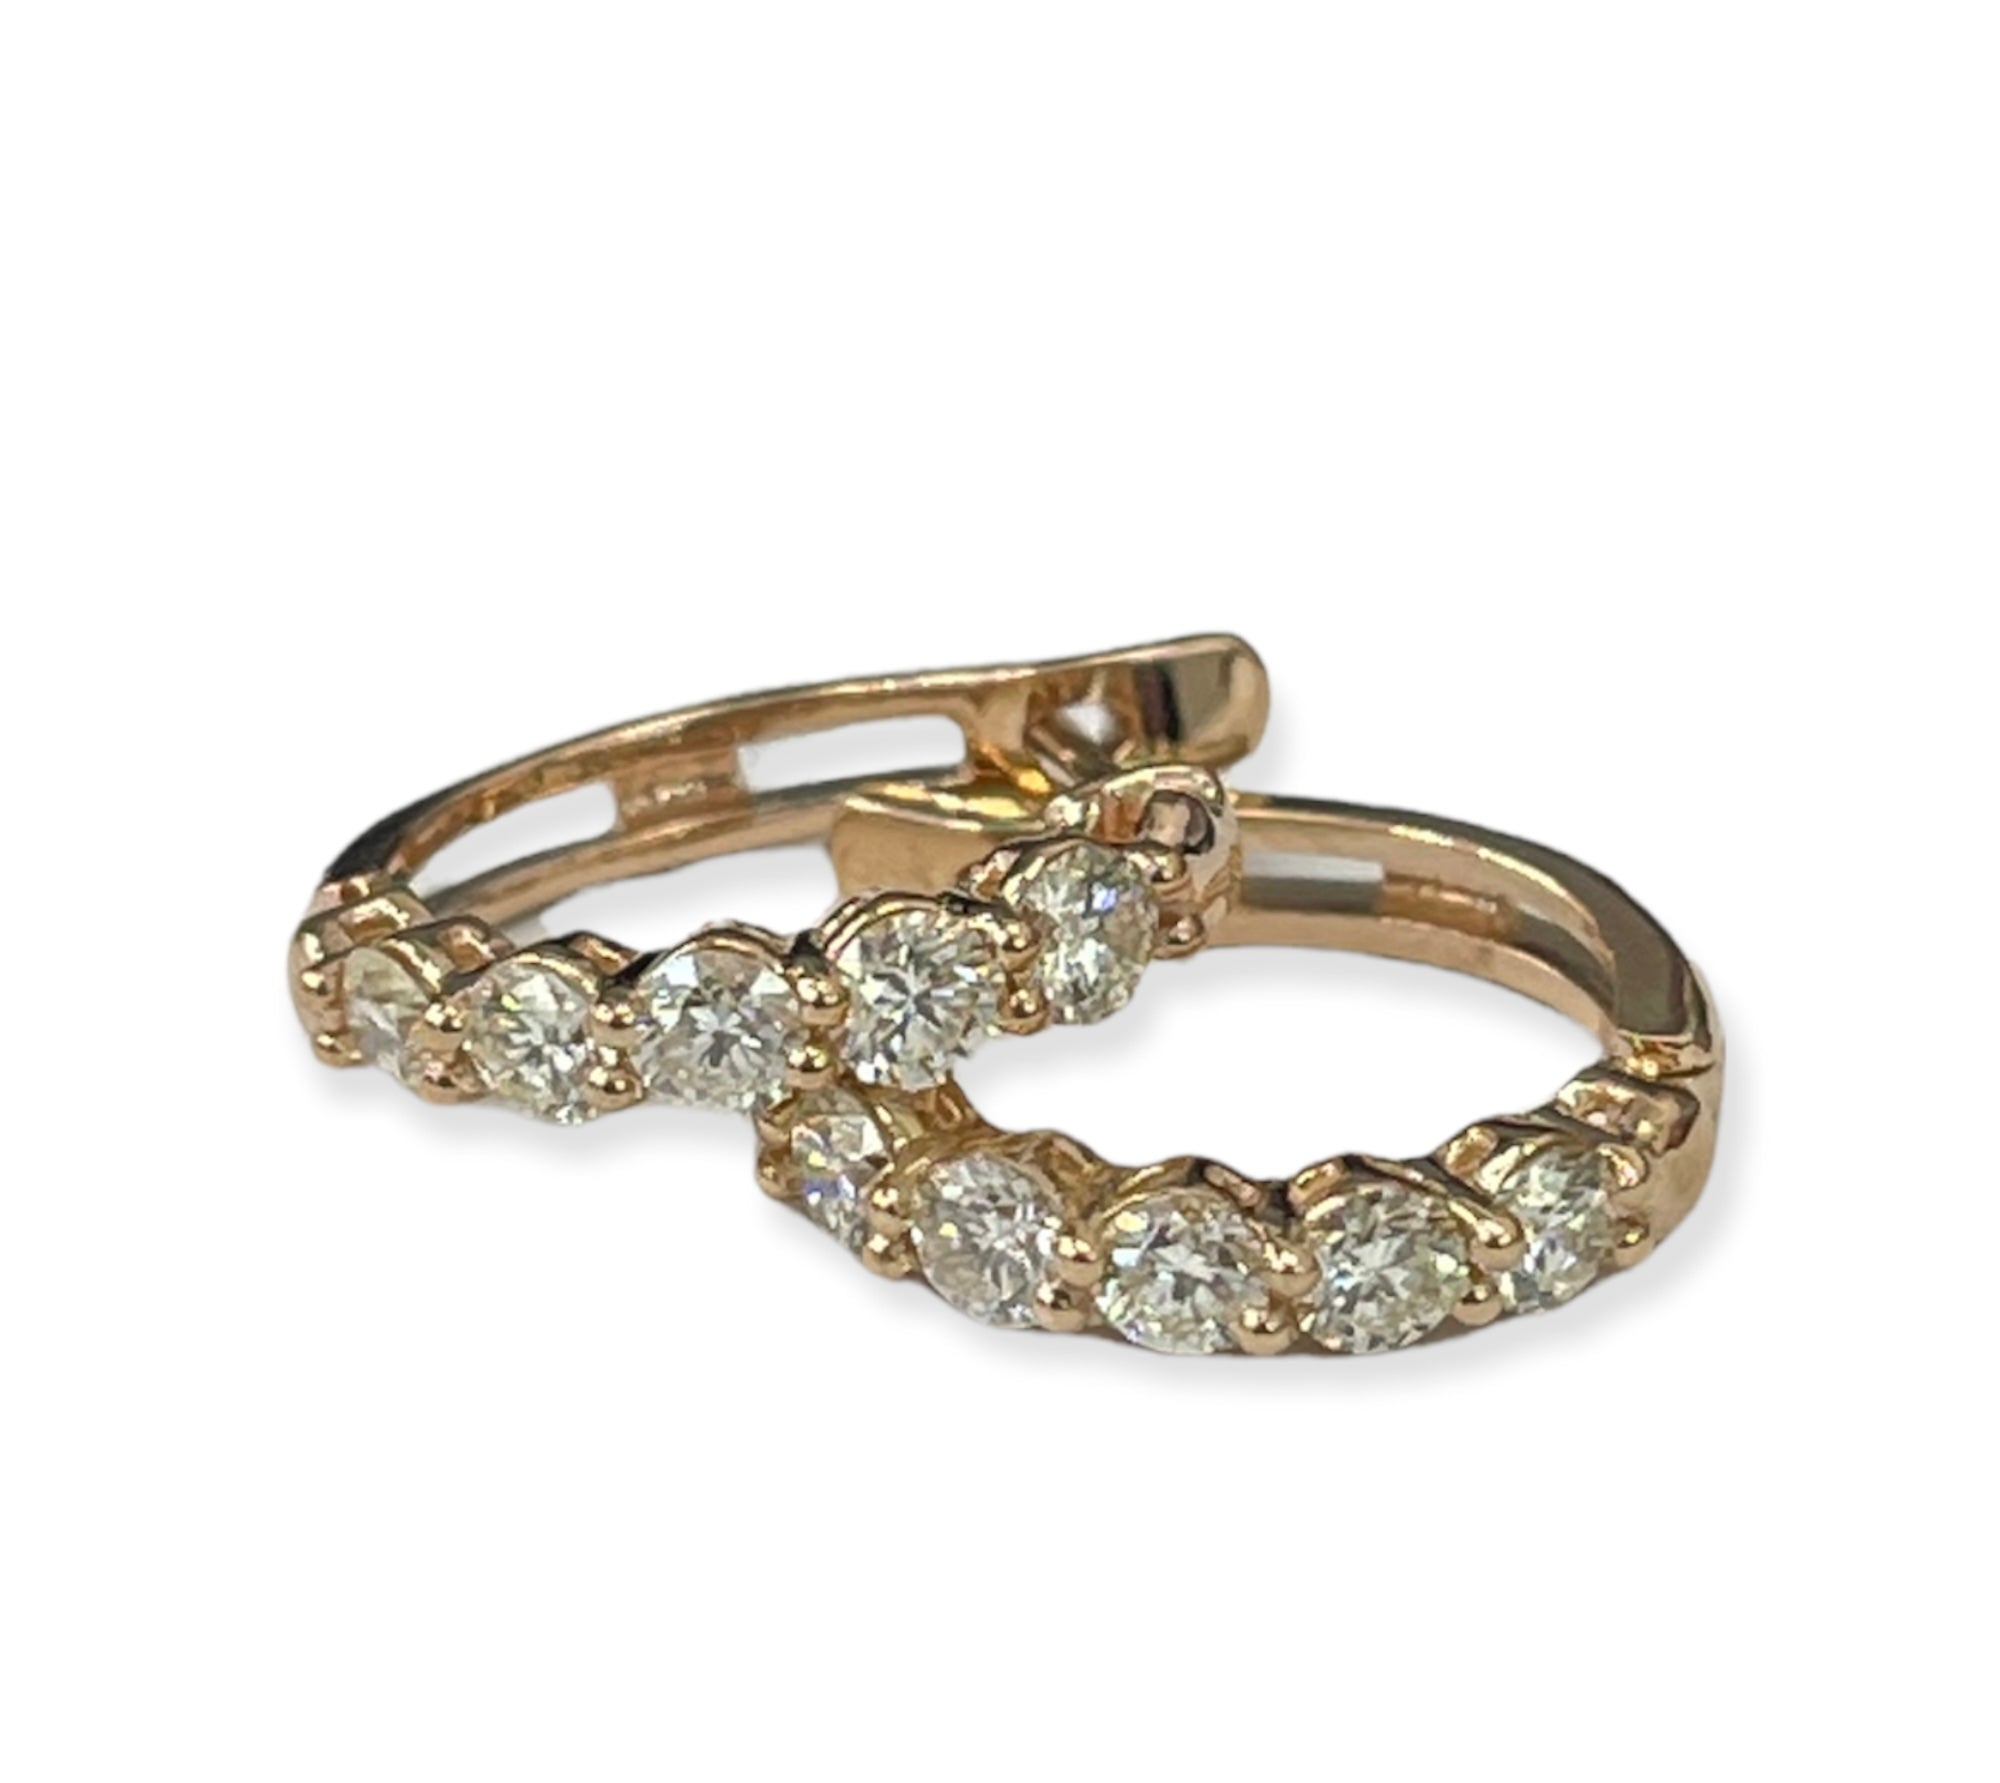 Round Brilliants Huggie Hoop Diamond Earrings rose Gold 14kt